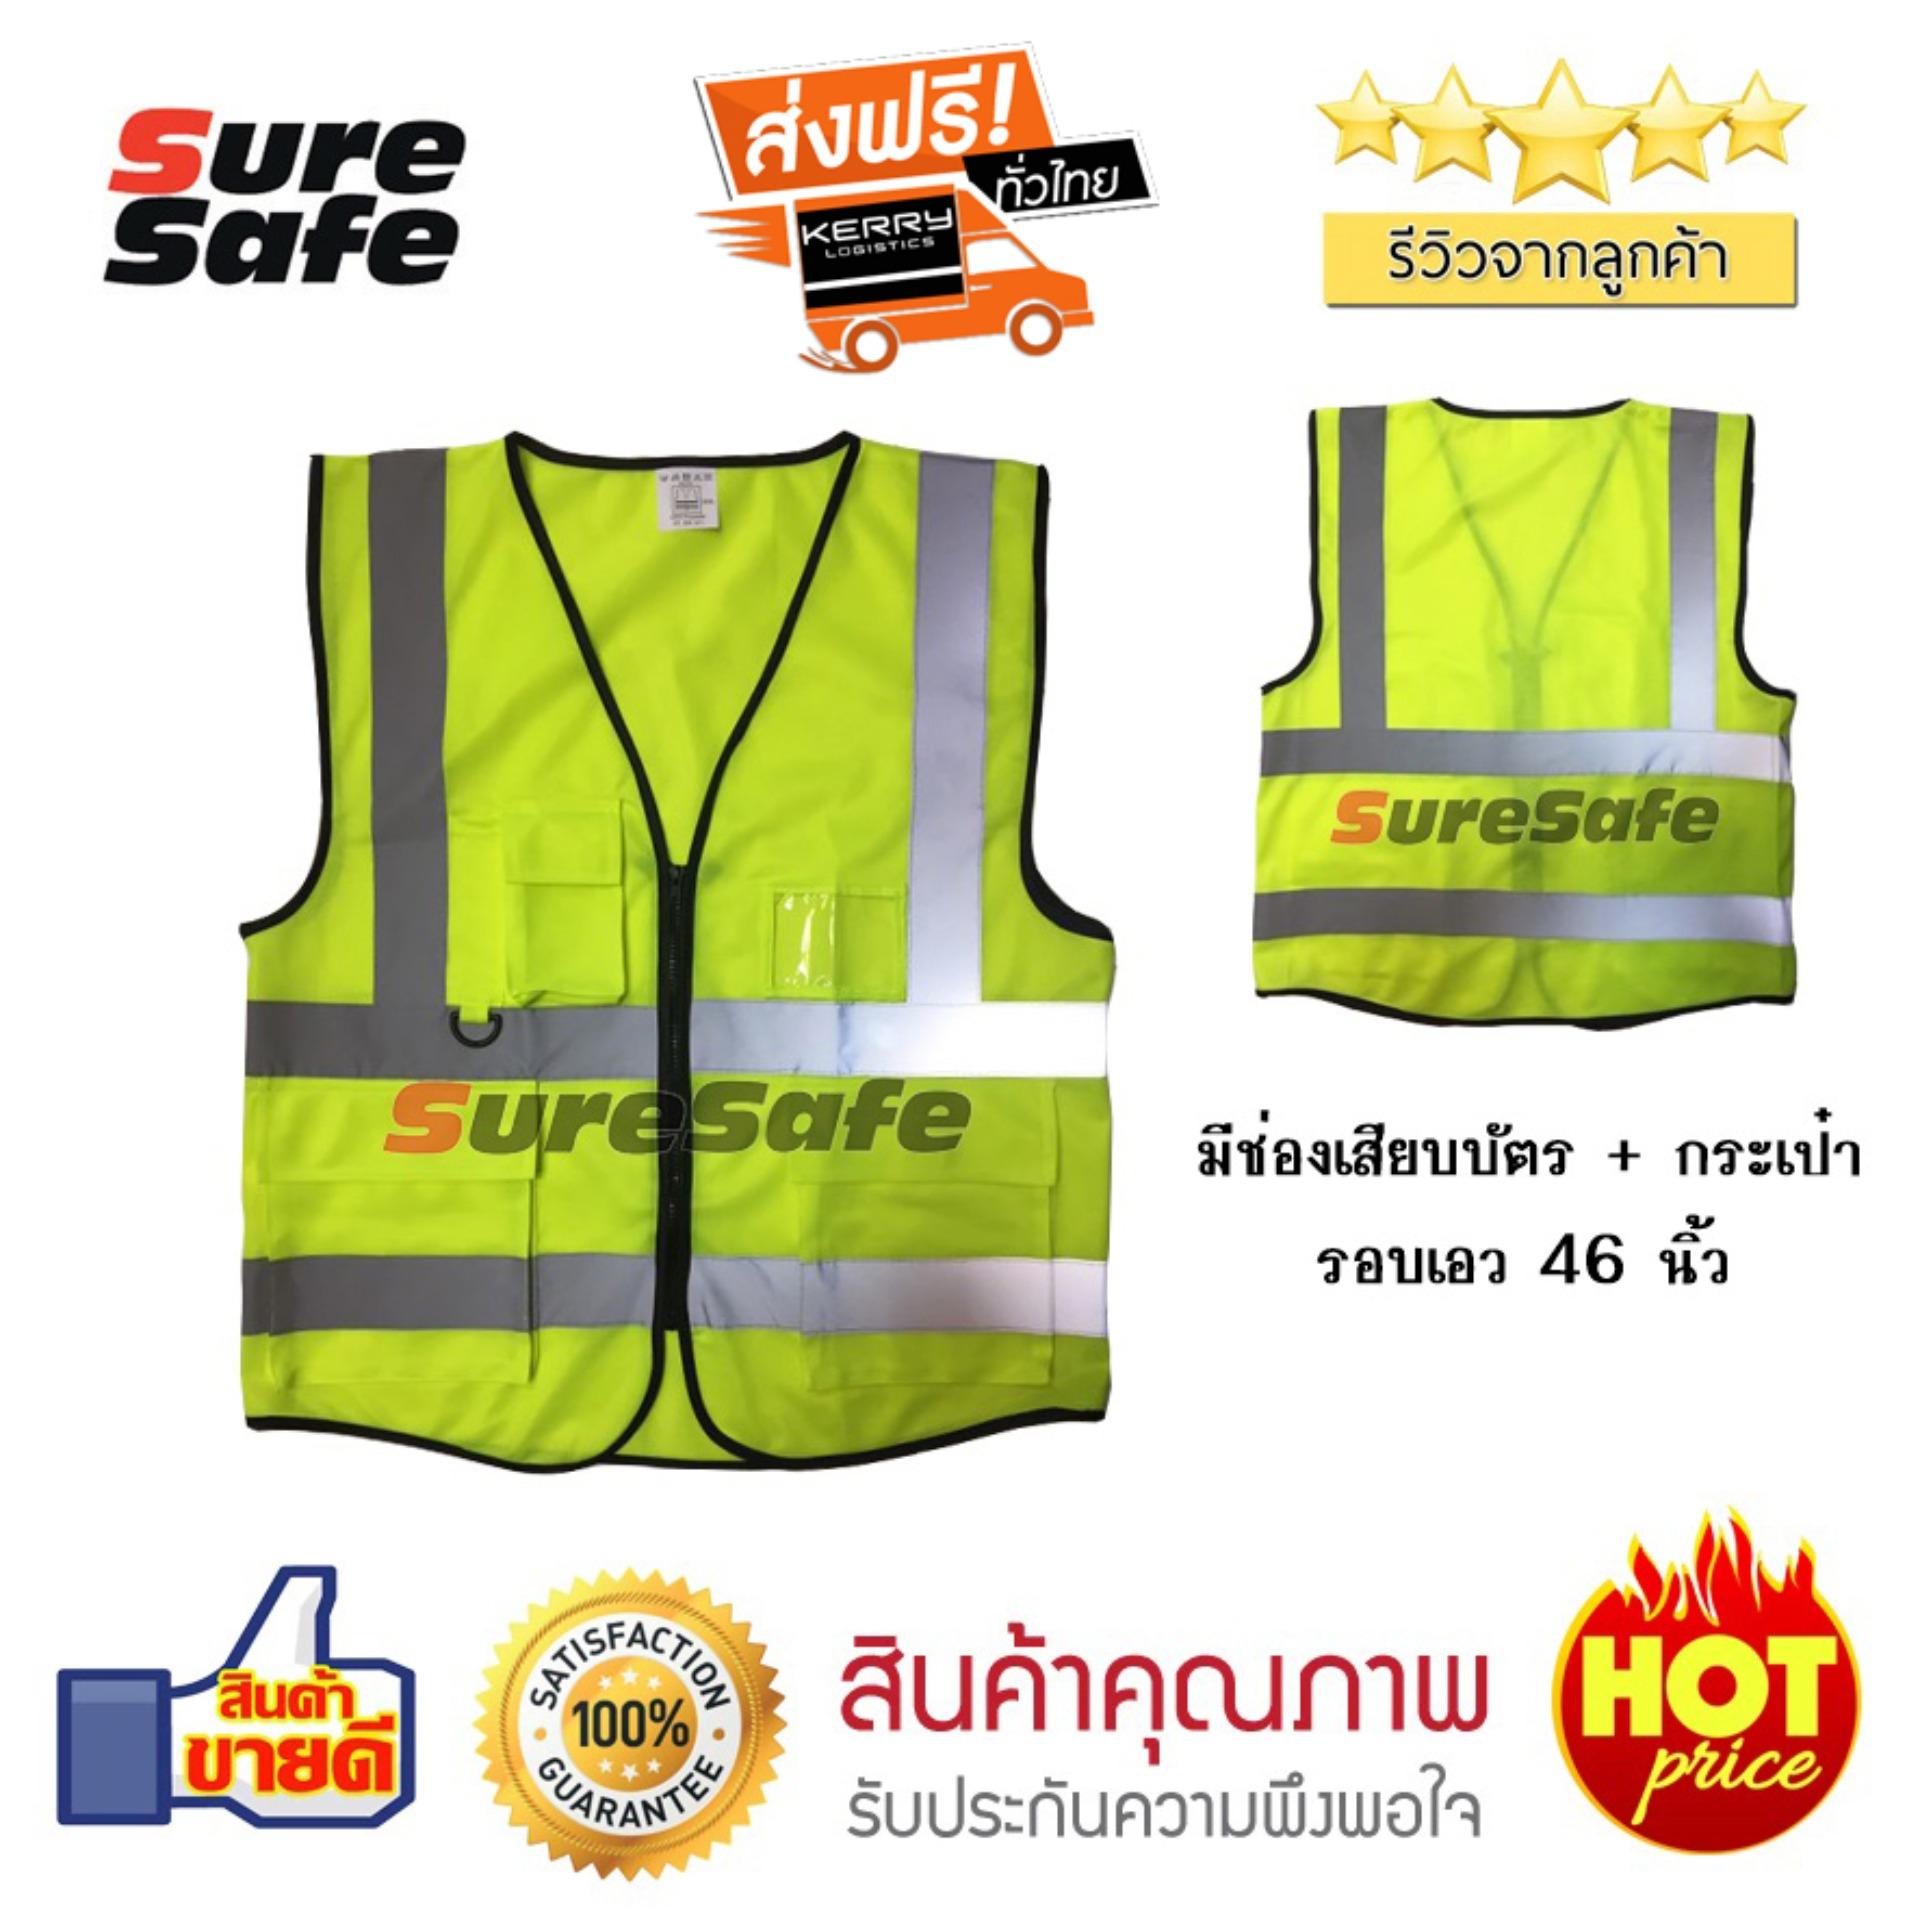 Suresafe Safety Vest เสื้อสะท้อนแสงรุ่นเต็มตัว สีเหลือง มีช่องเสียบบัตรและปากกา